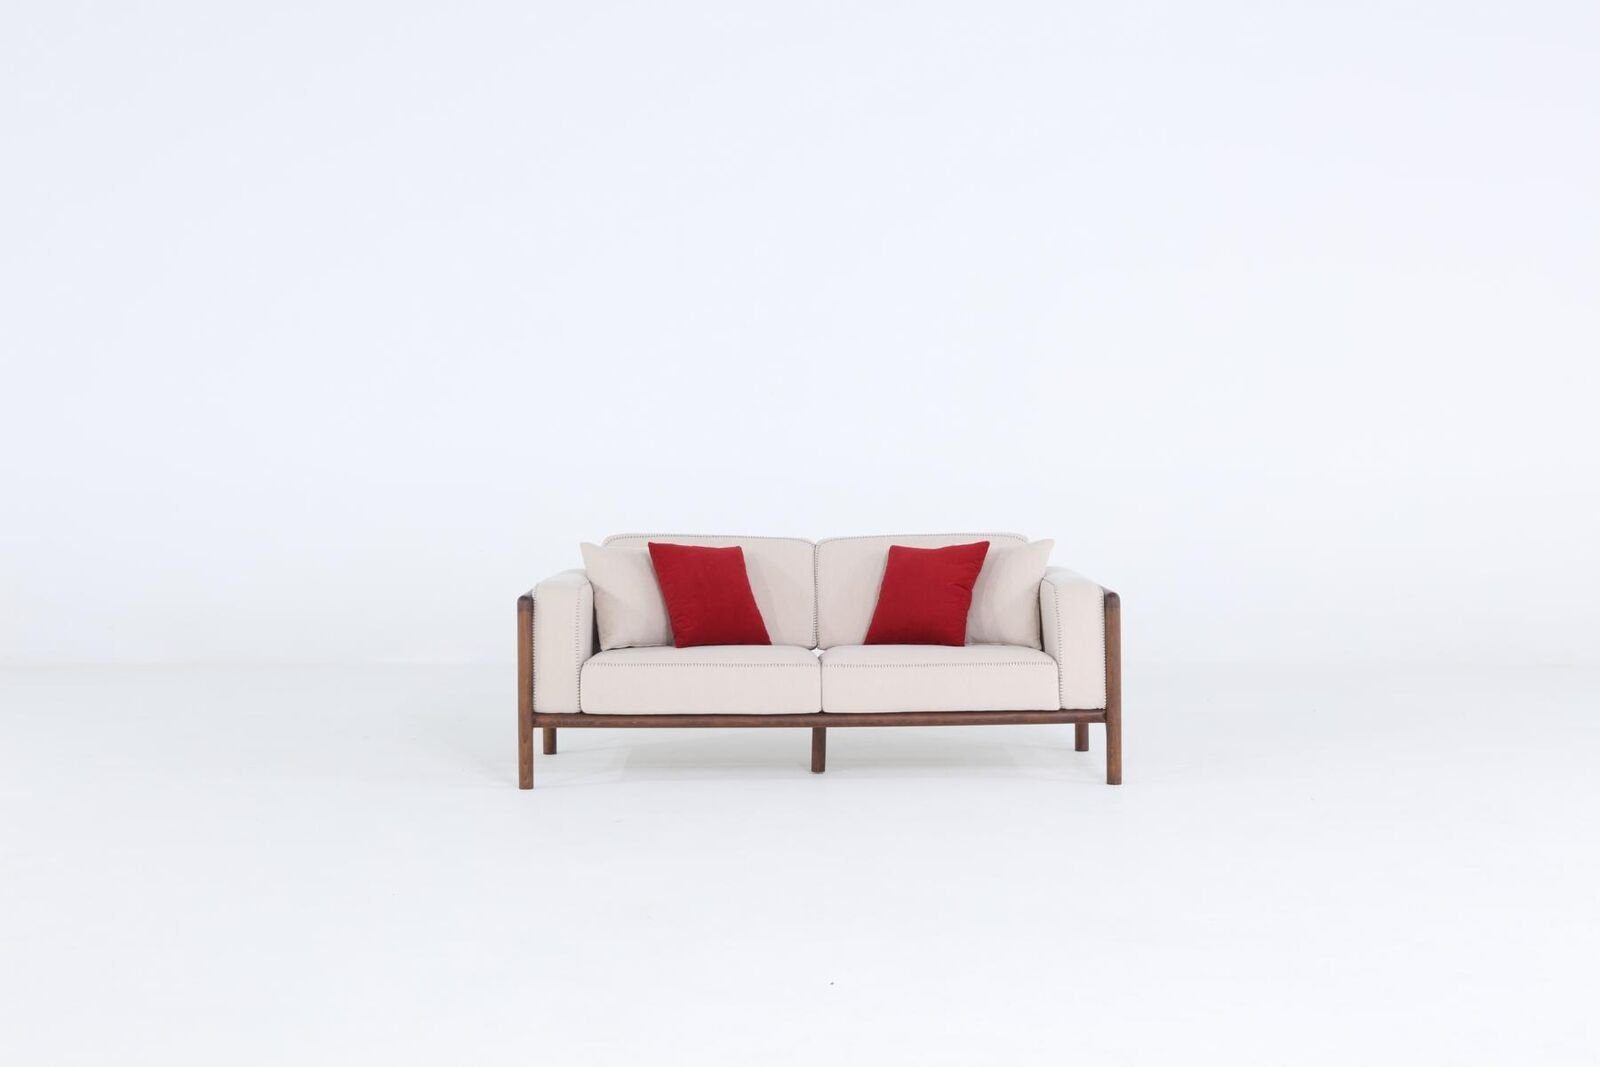 Zweisitzer Sofa Europa Made 1 2 Sitzer 2-Sitzer Teile, Weiß, Sofas Wohnzimmer Design in Neu Stoff JVmoebel Modern